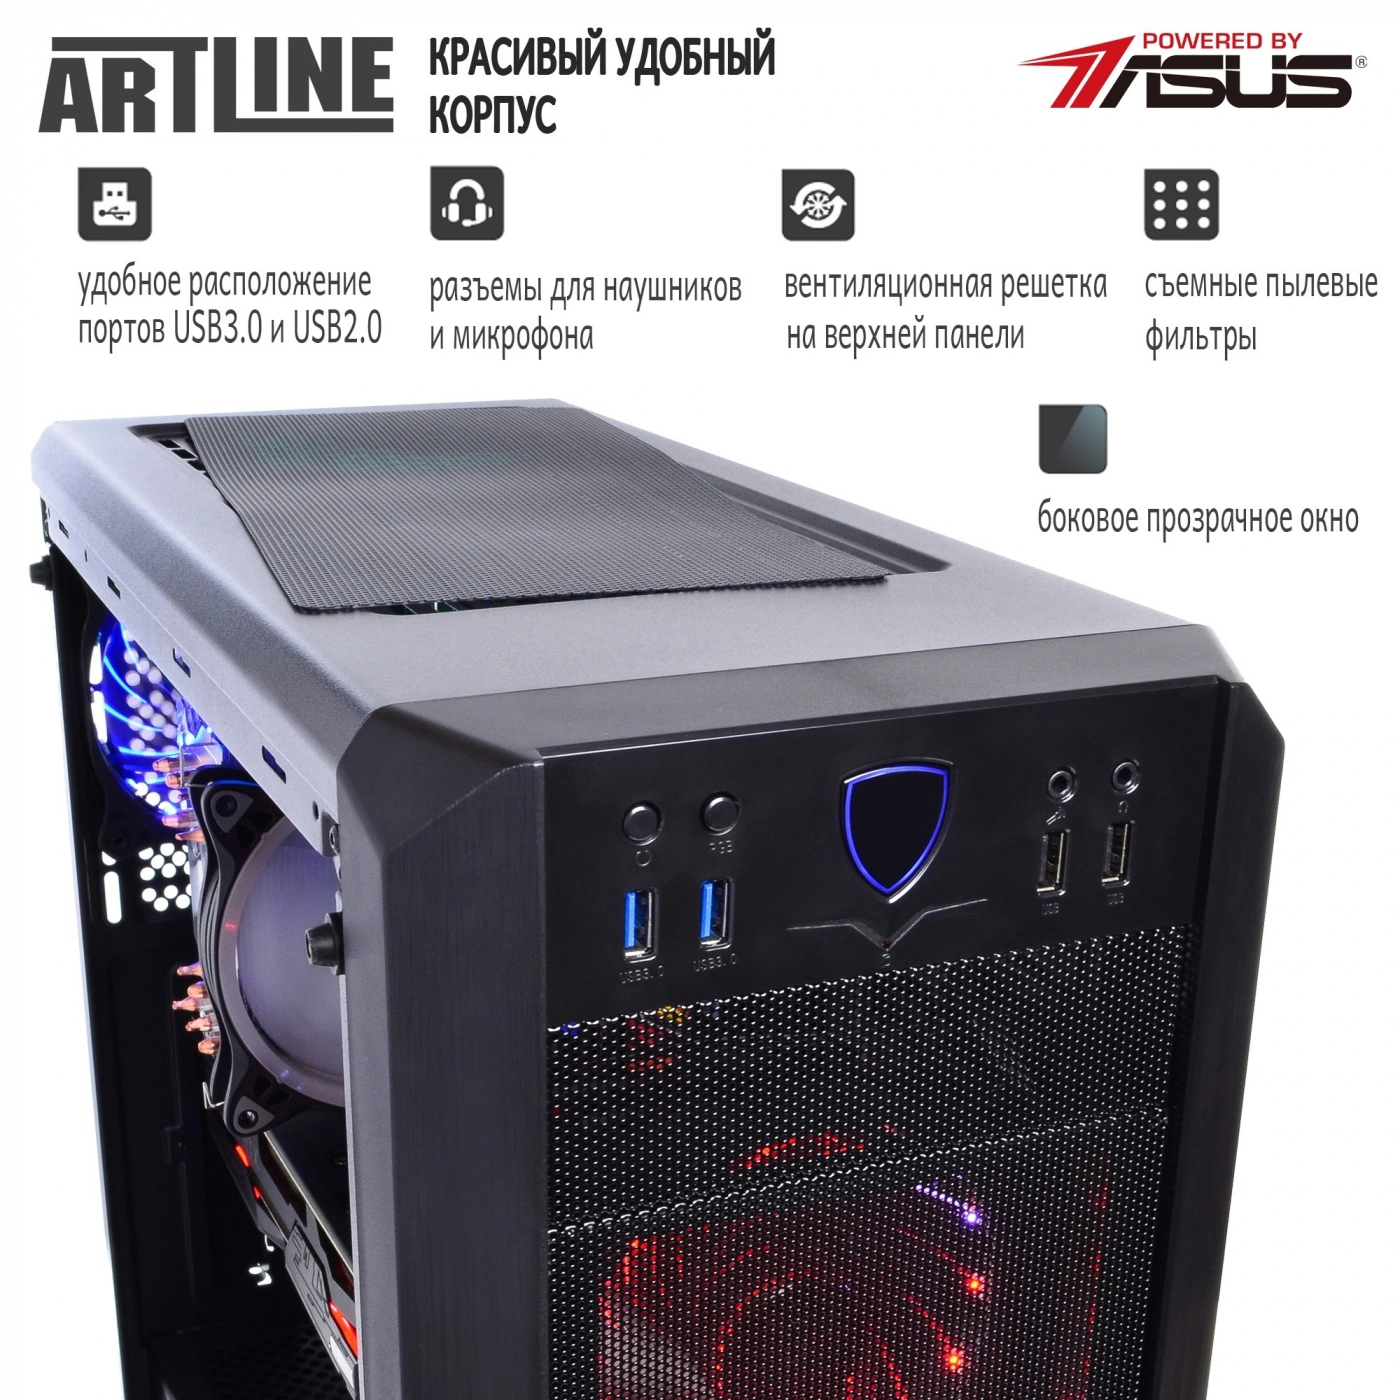 Купить Компьютер ARTLINE Gaming X93v48 - фото 2